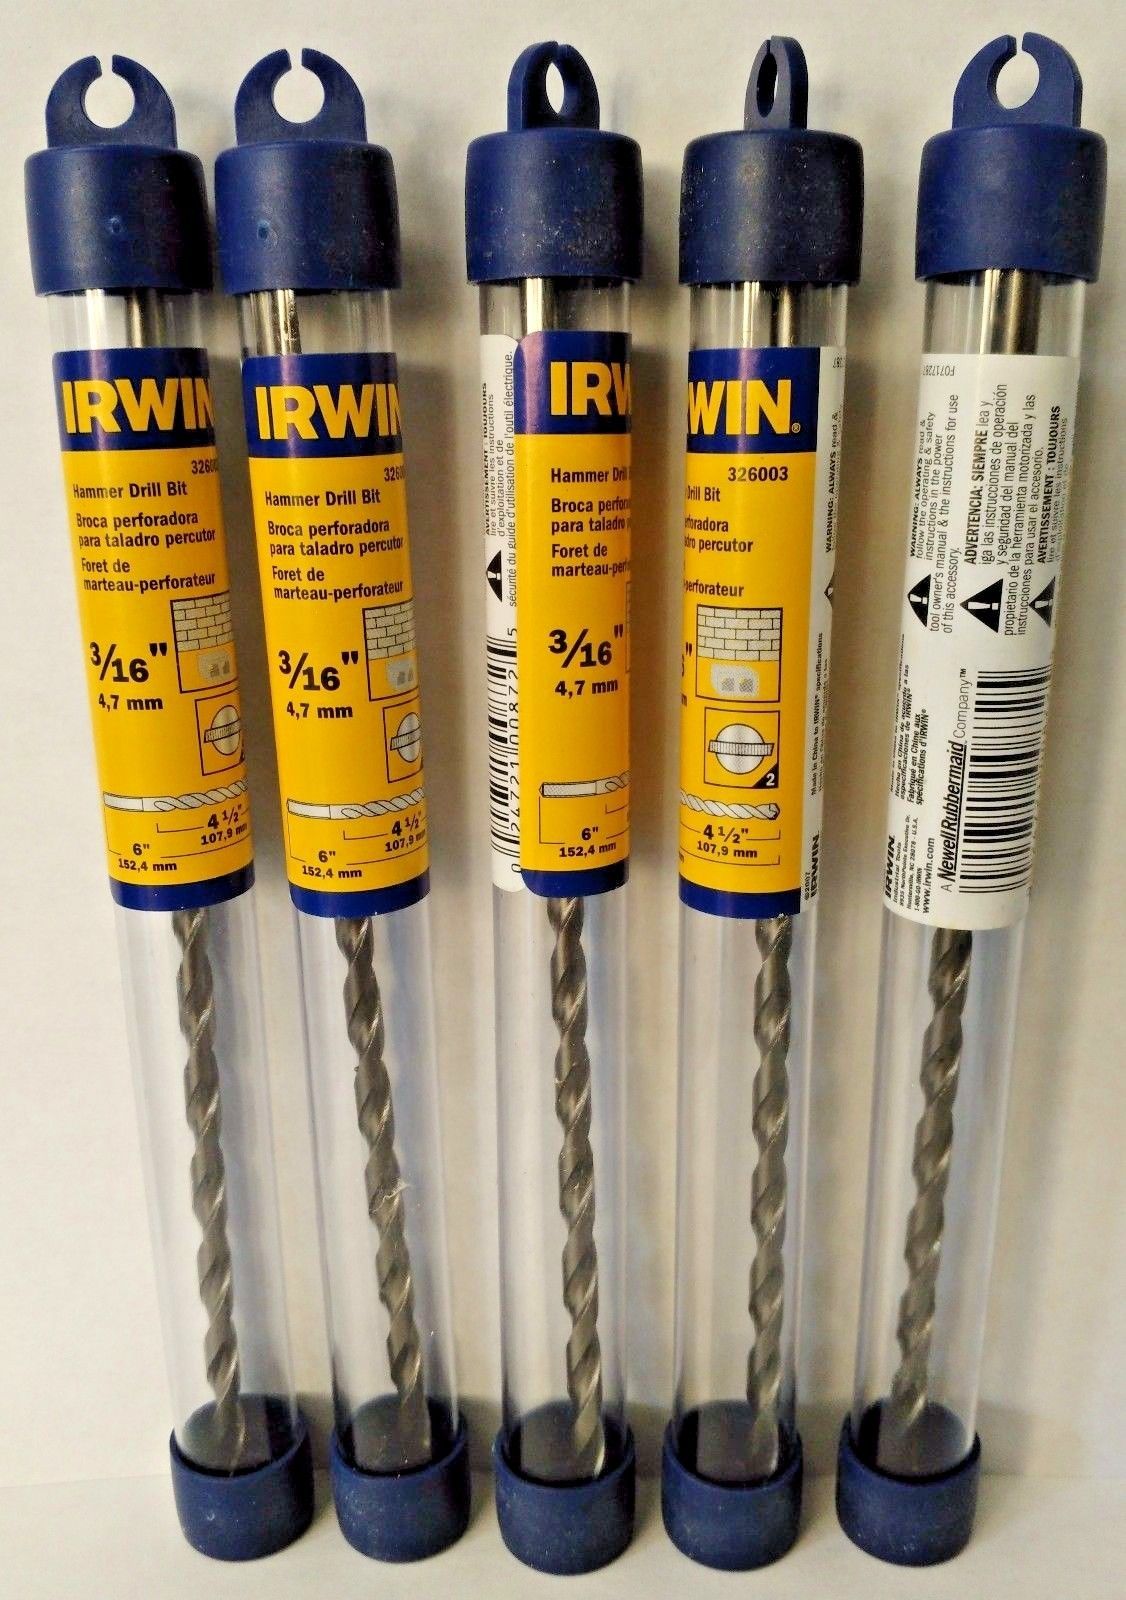 Irwin 326003 3/16" x 4-1/2" x 6" Hammer Drill Bit 5 Packs